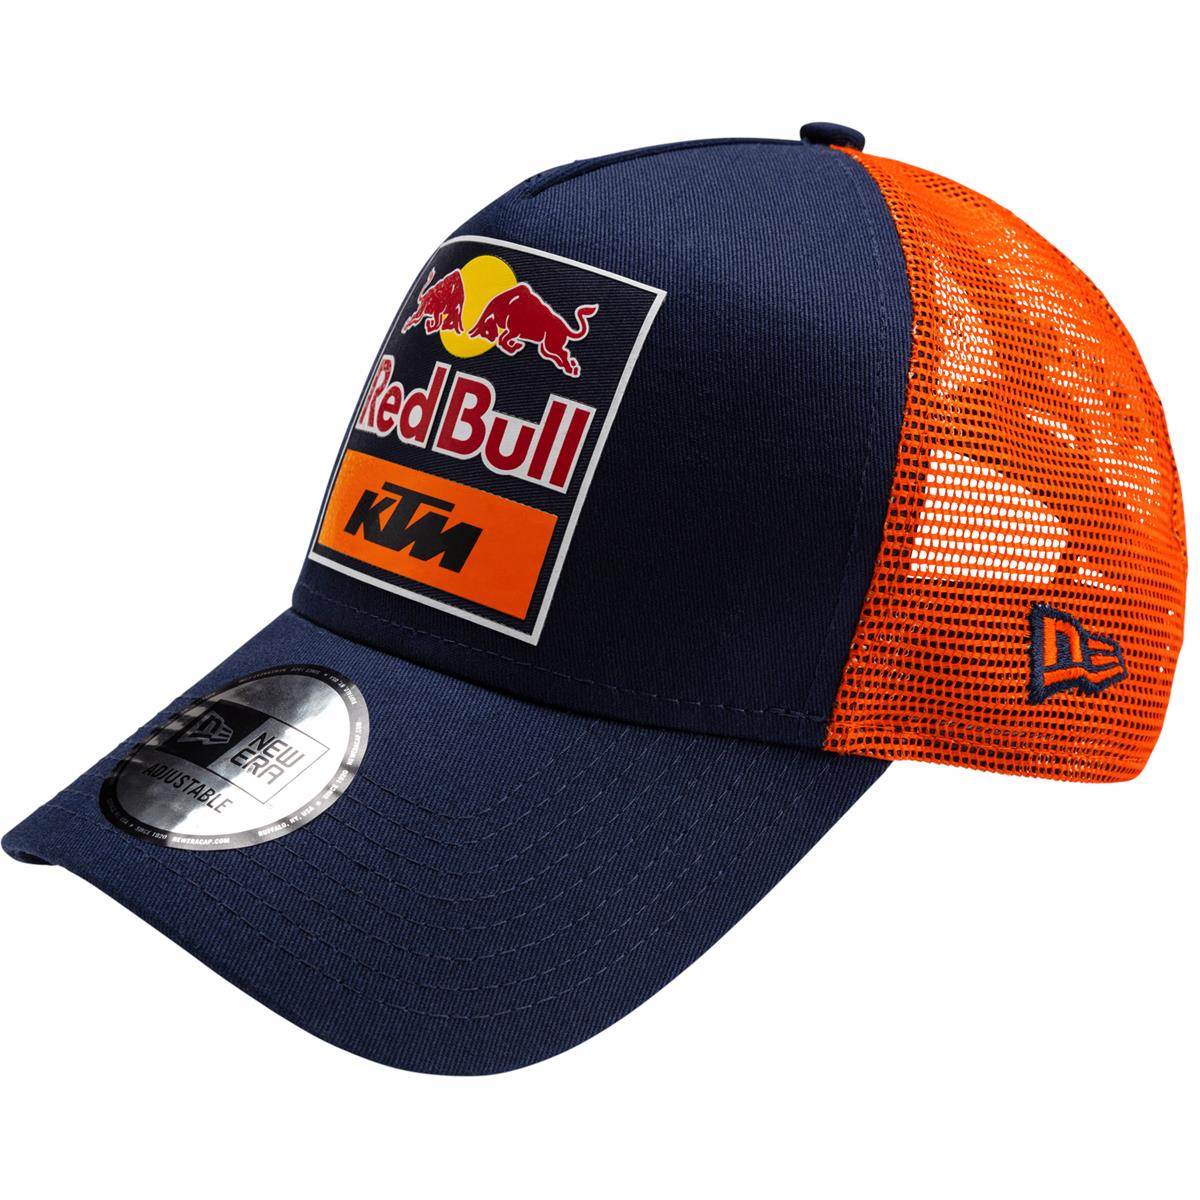 Red Bull Cappellino Trucker KTM Official Teamline Replica - Navy/Arancione